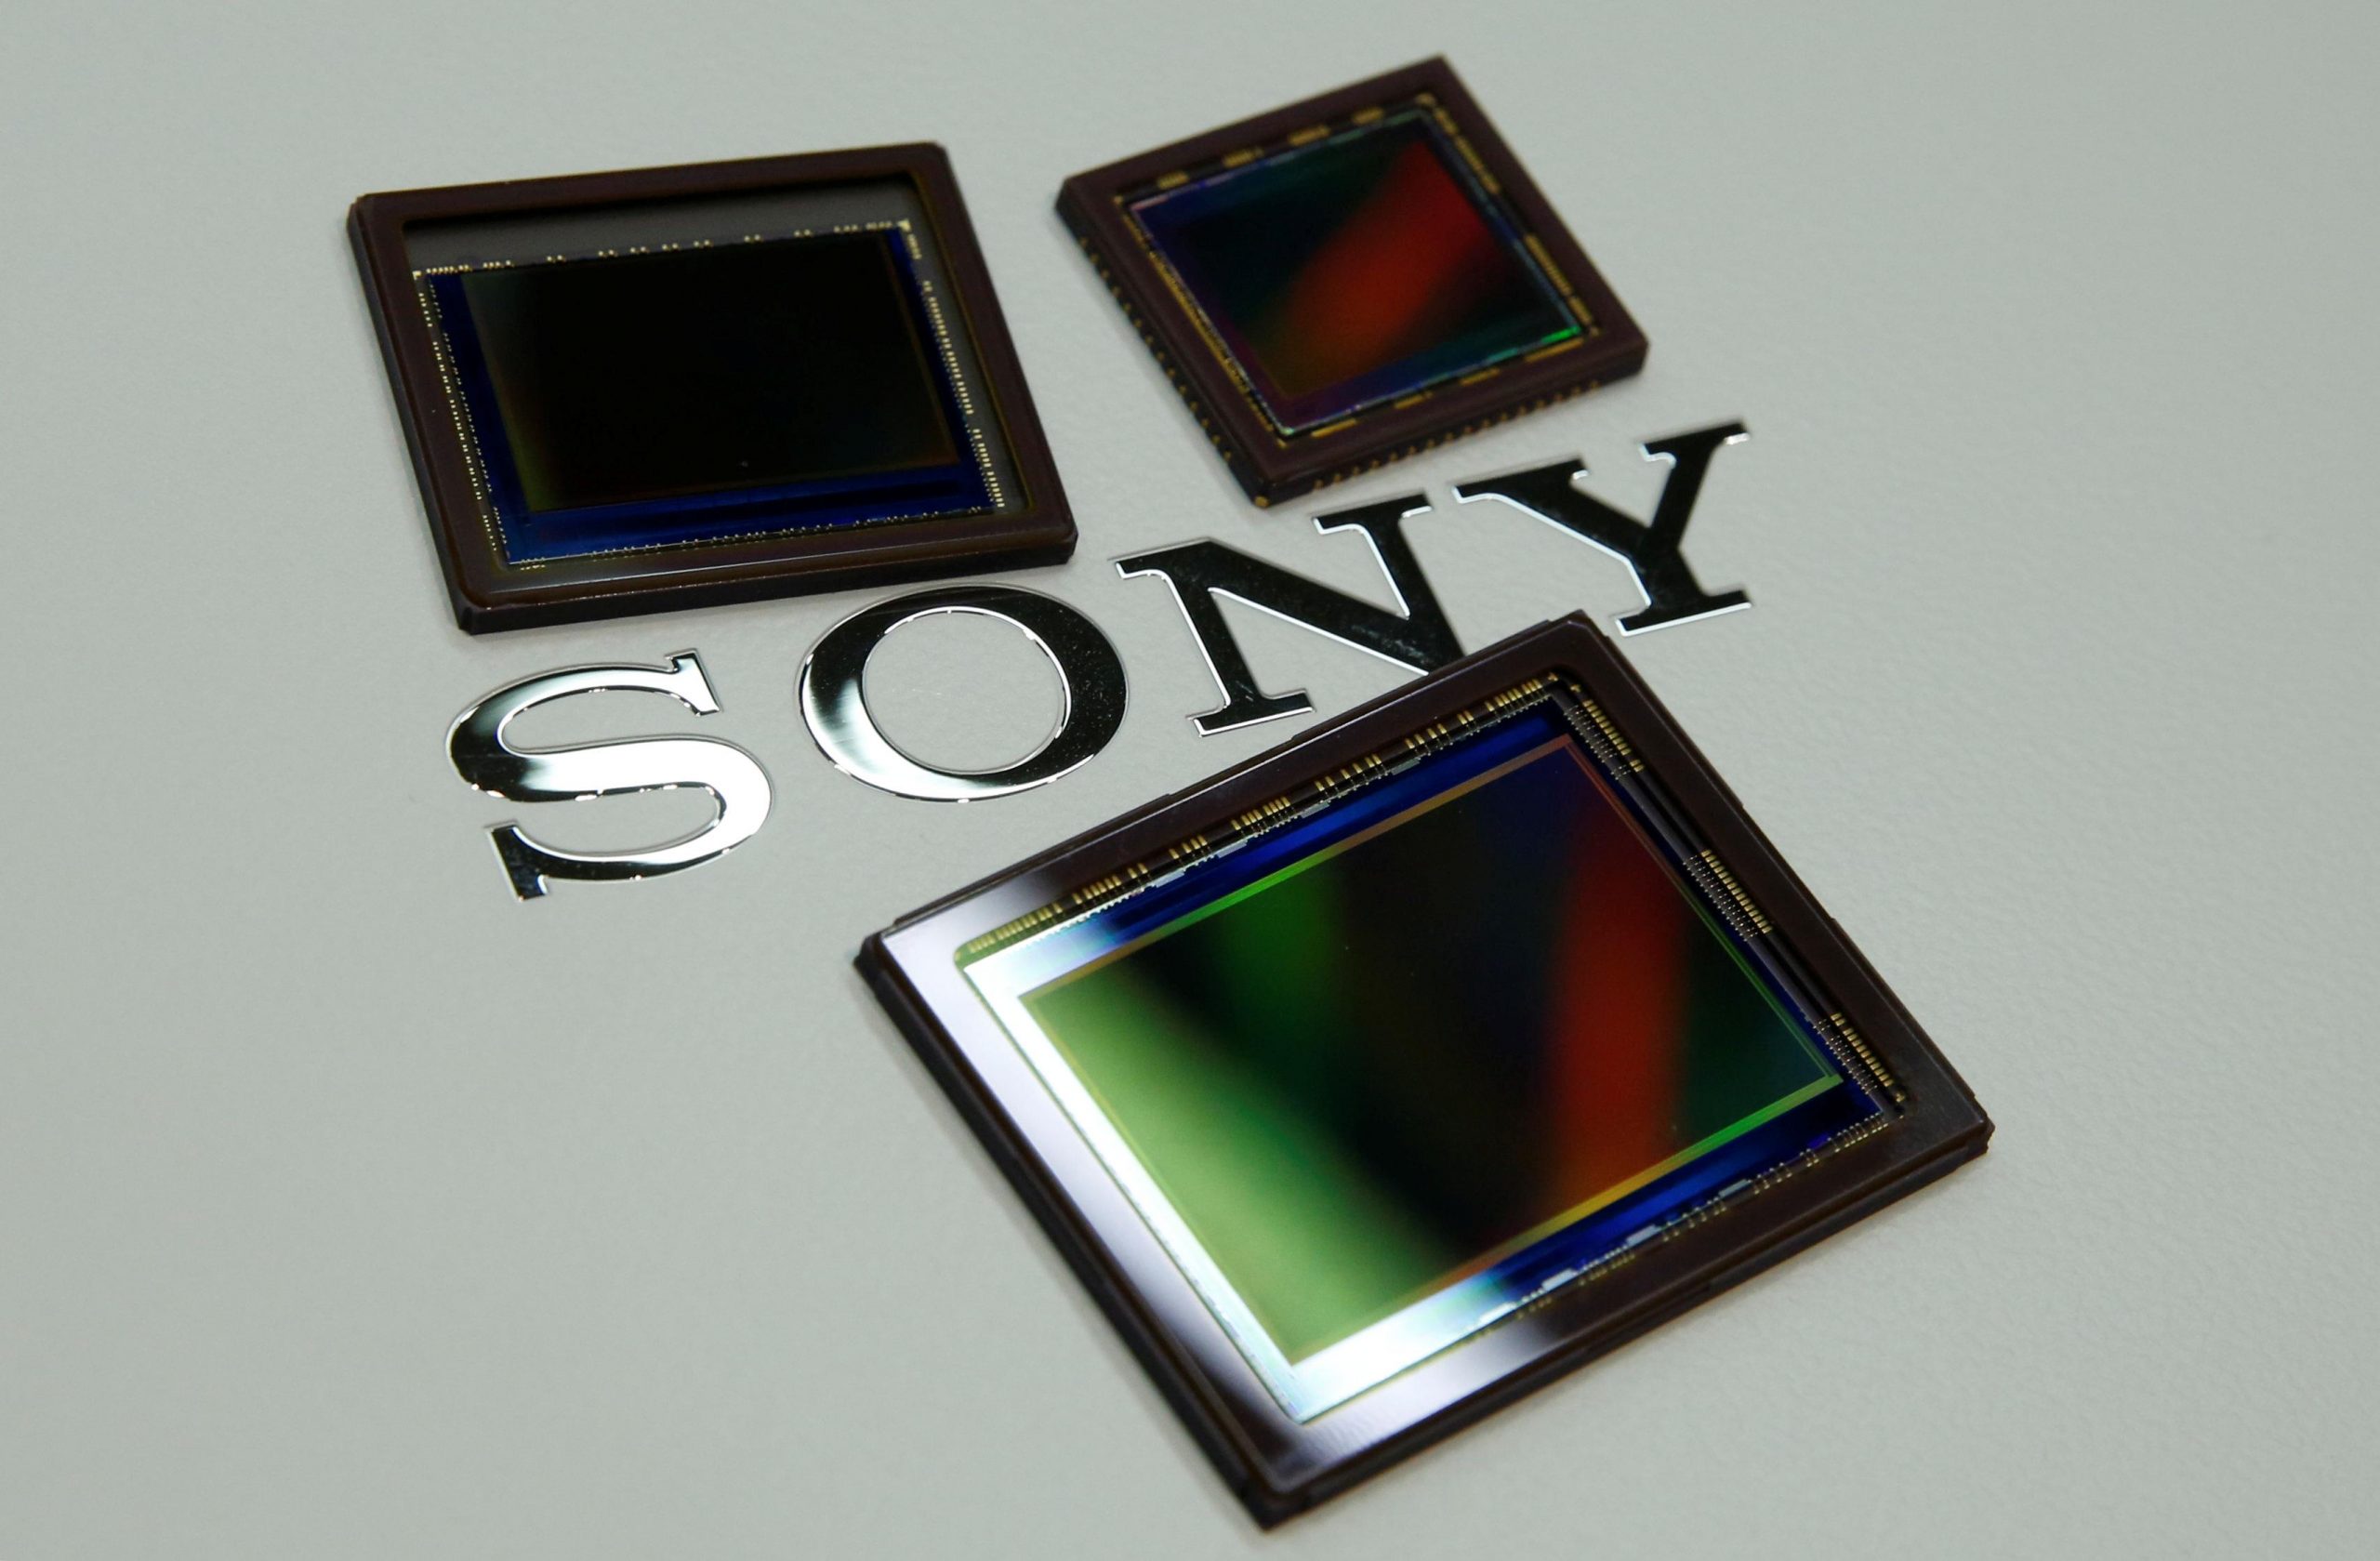 Sony cho biết virus Corona không ảnh hưởng tới dây chuyền sản xuất cảm biến, nhưng nguồn cung lại bất ổn